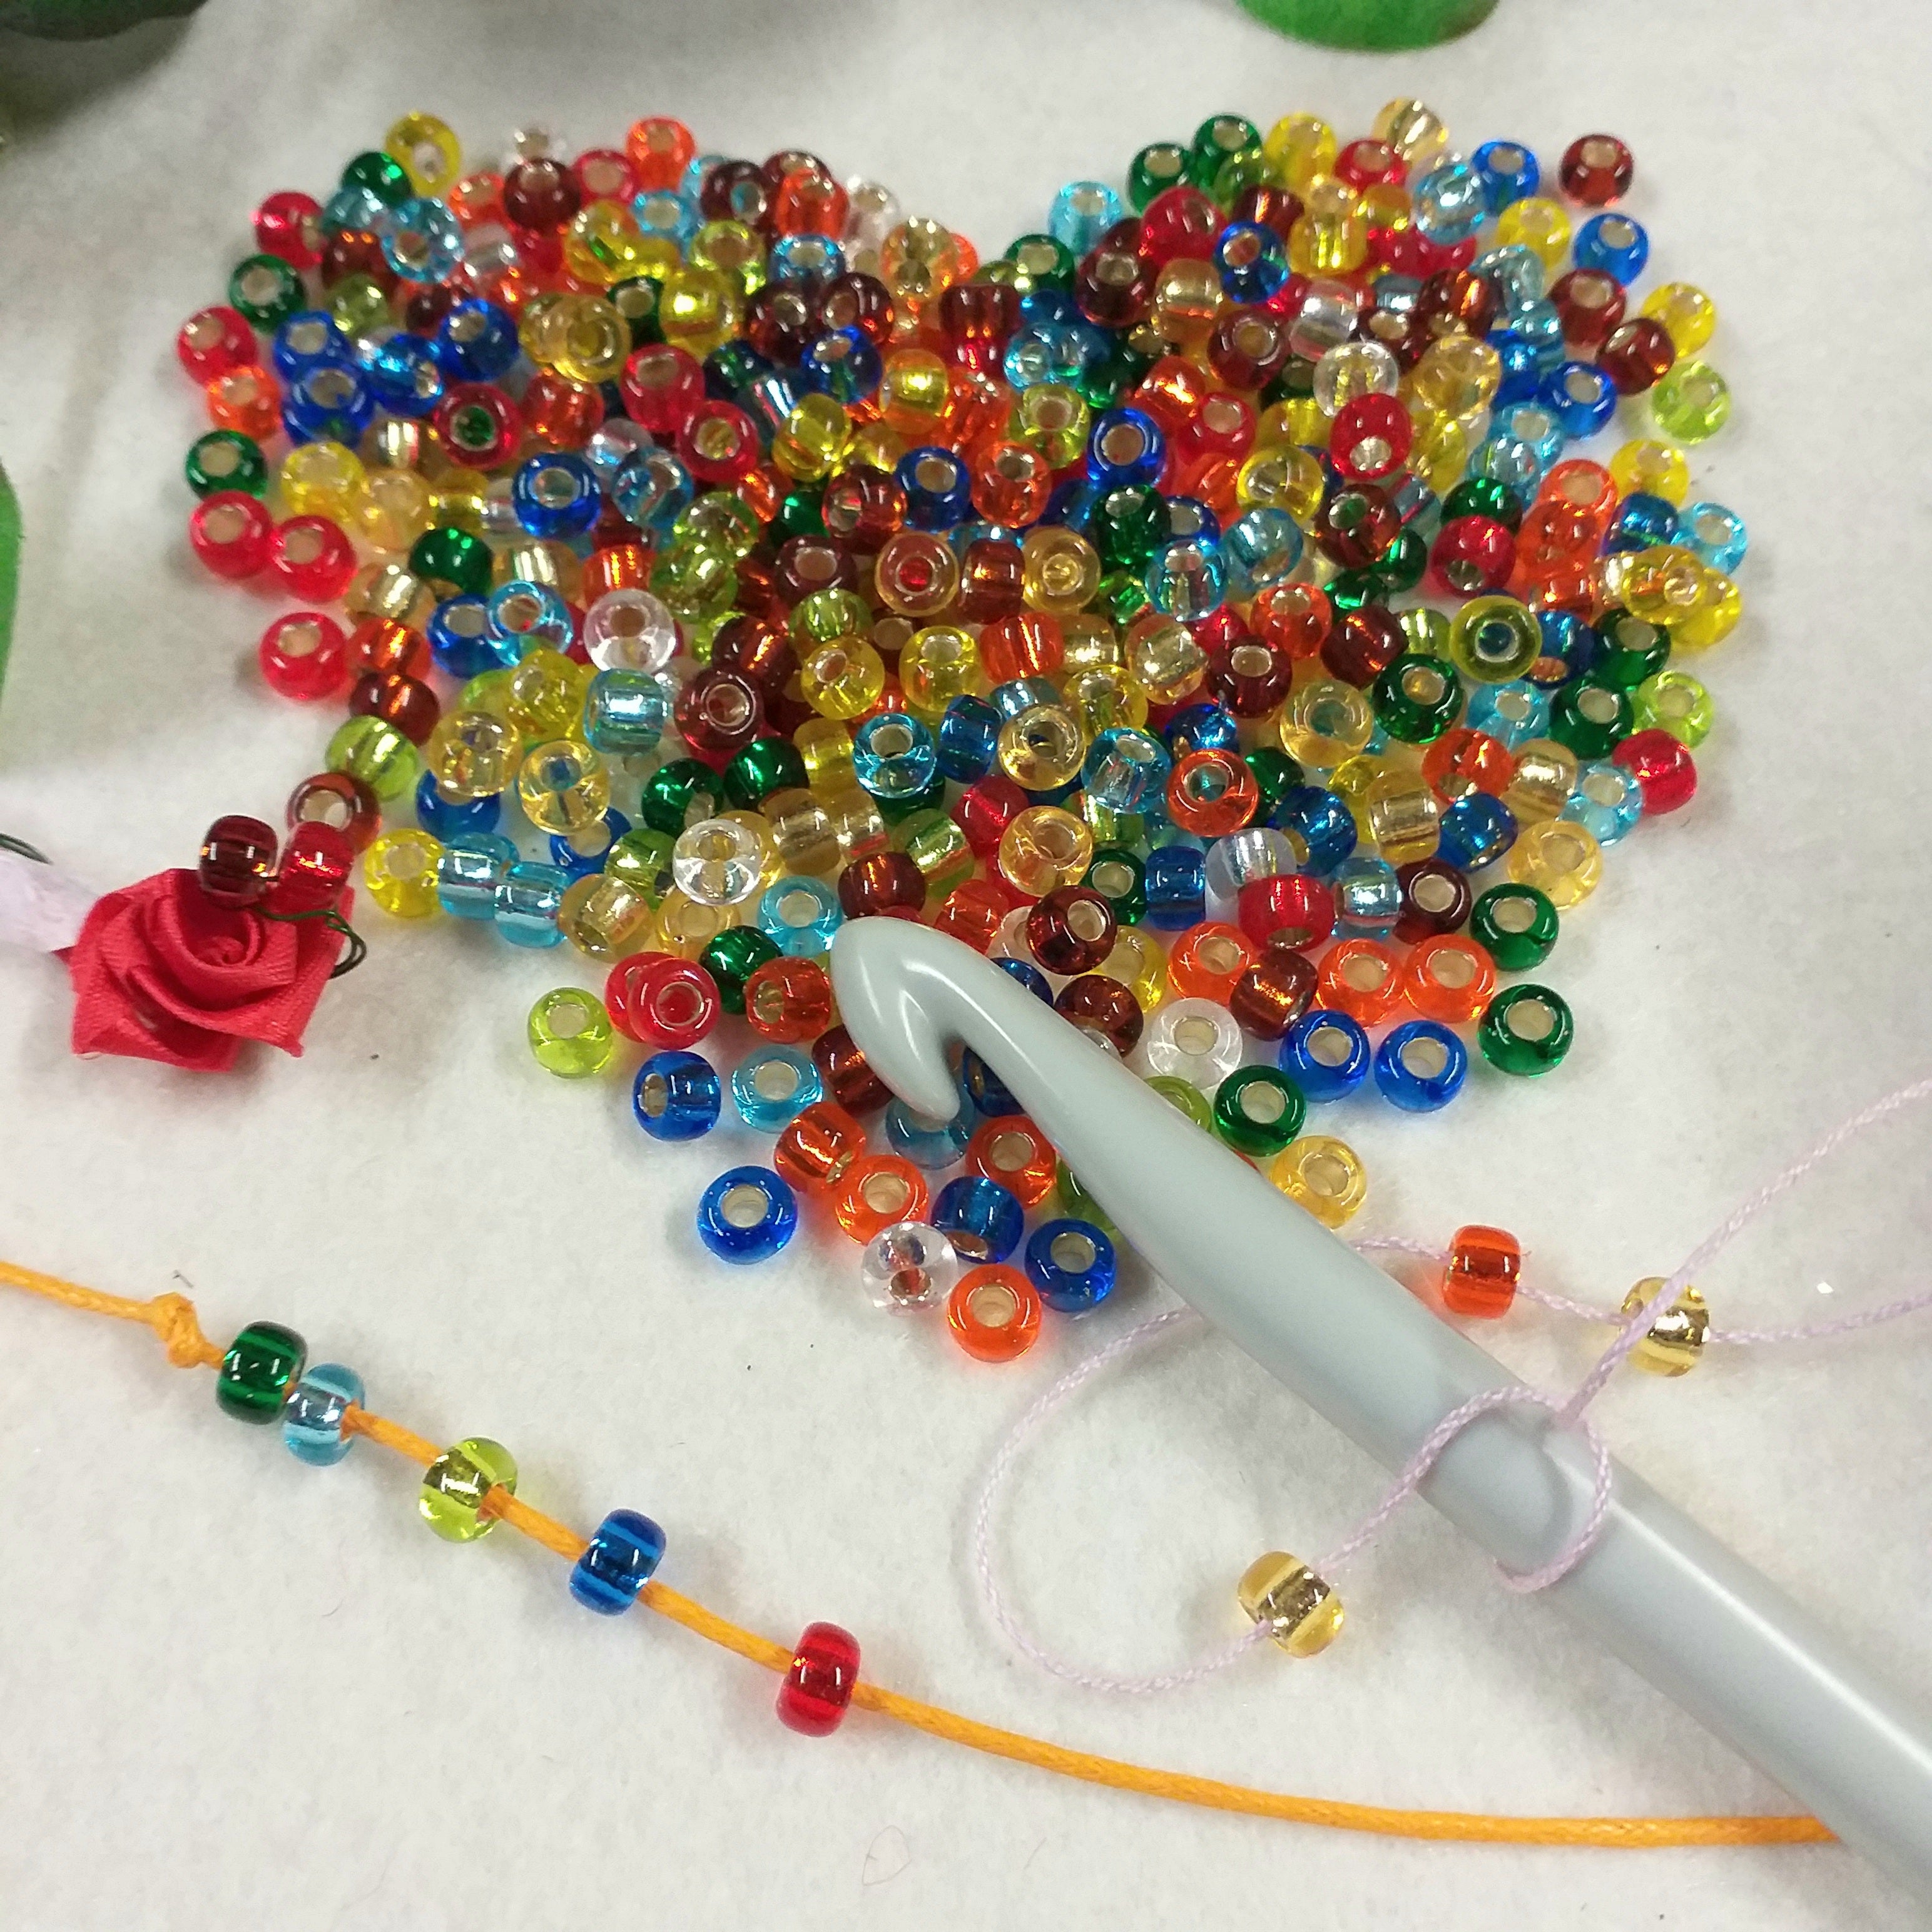 Perle e materiali accessori creare gioielli di bigiotteria fai da te –  hobbyshopbomboniere